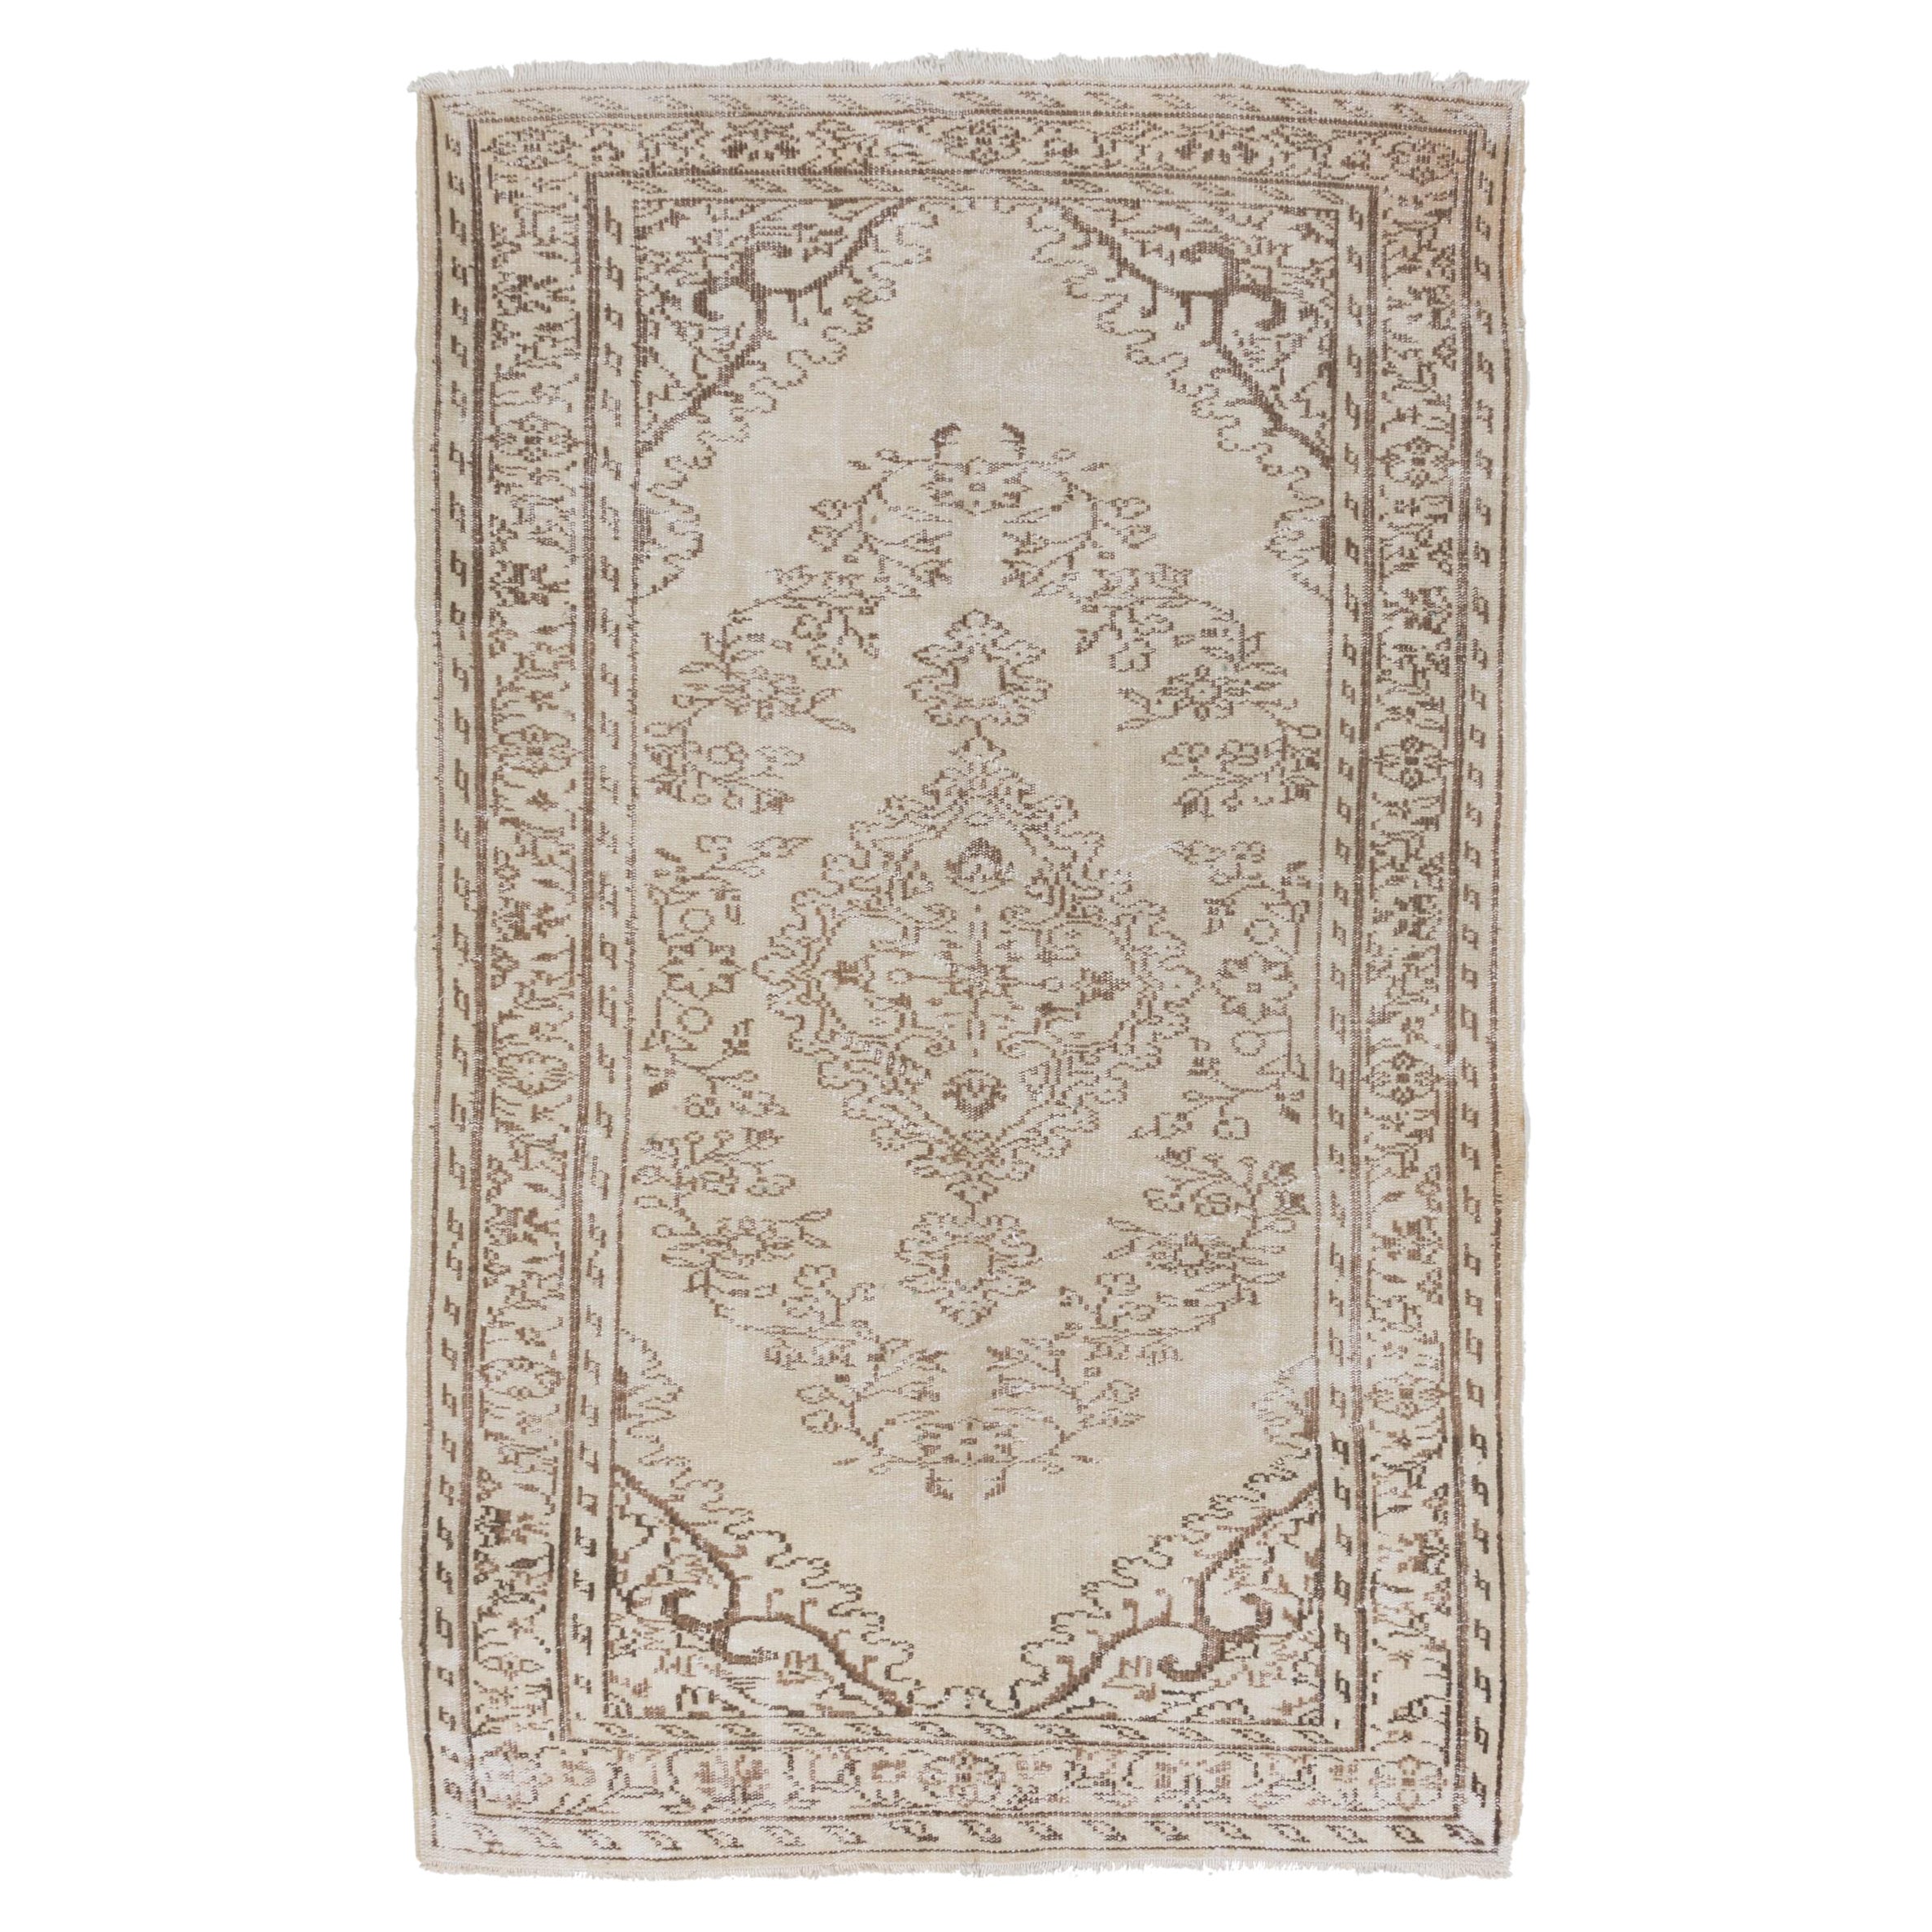 5.3x8.4 ft Vintage Anatolian Oushak Rug, Beige Handmade Carpet, Floor Covering